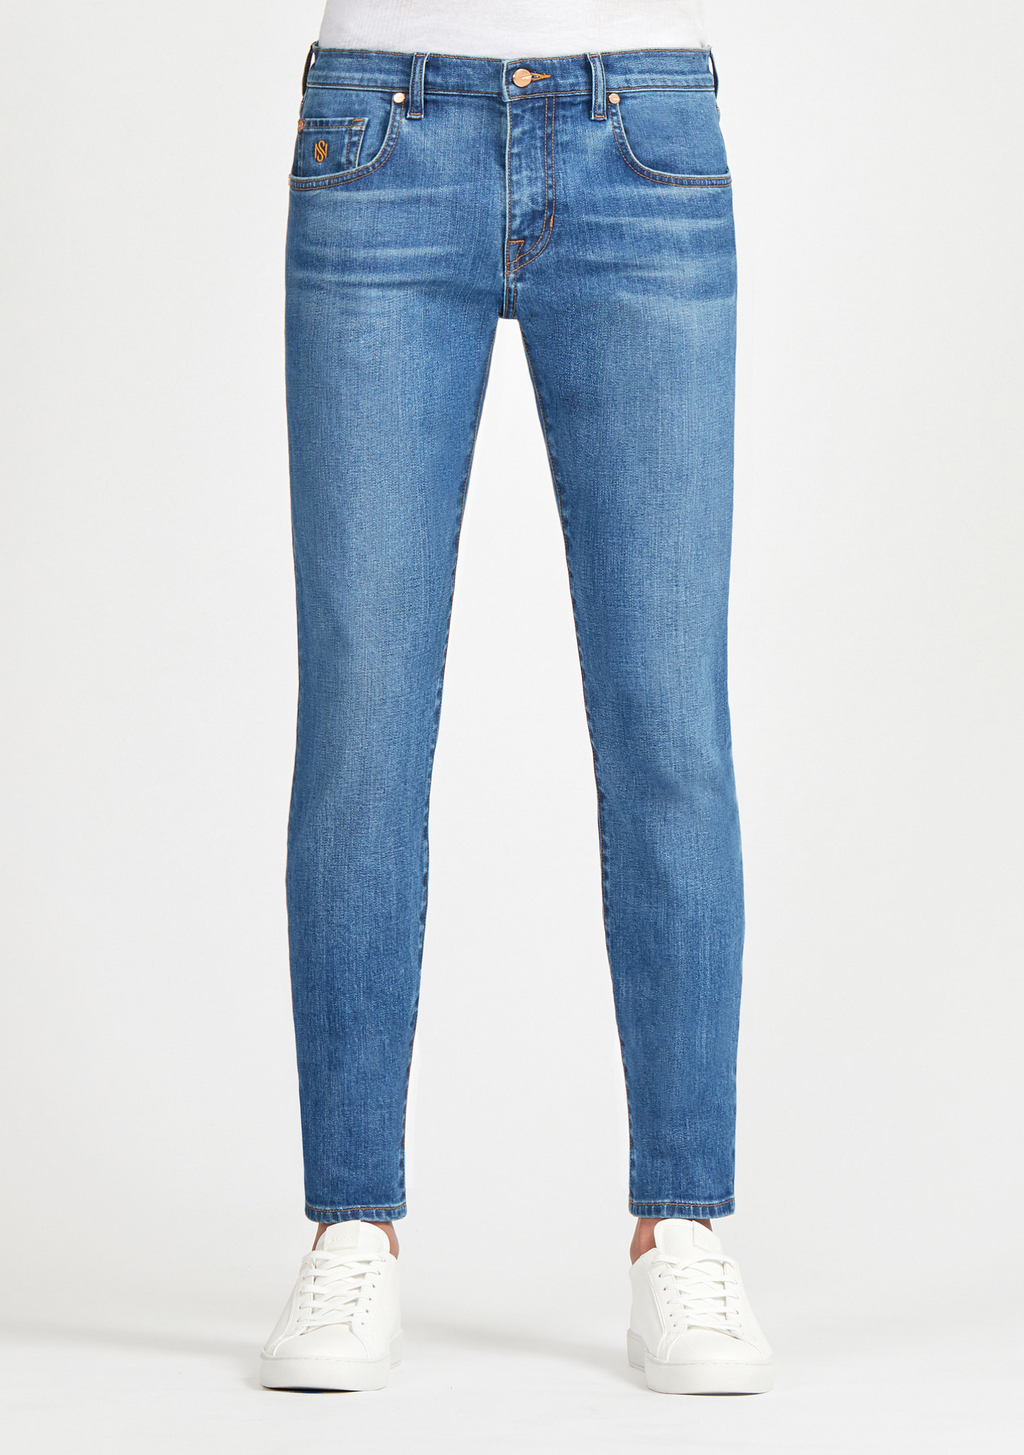 Blue Skinny Jeans for Women  SOUL OF NOMAD Women's Denim Akira